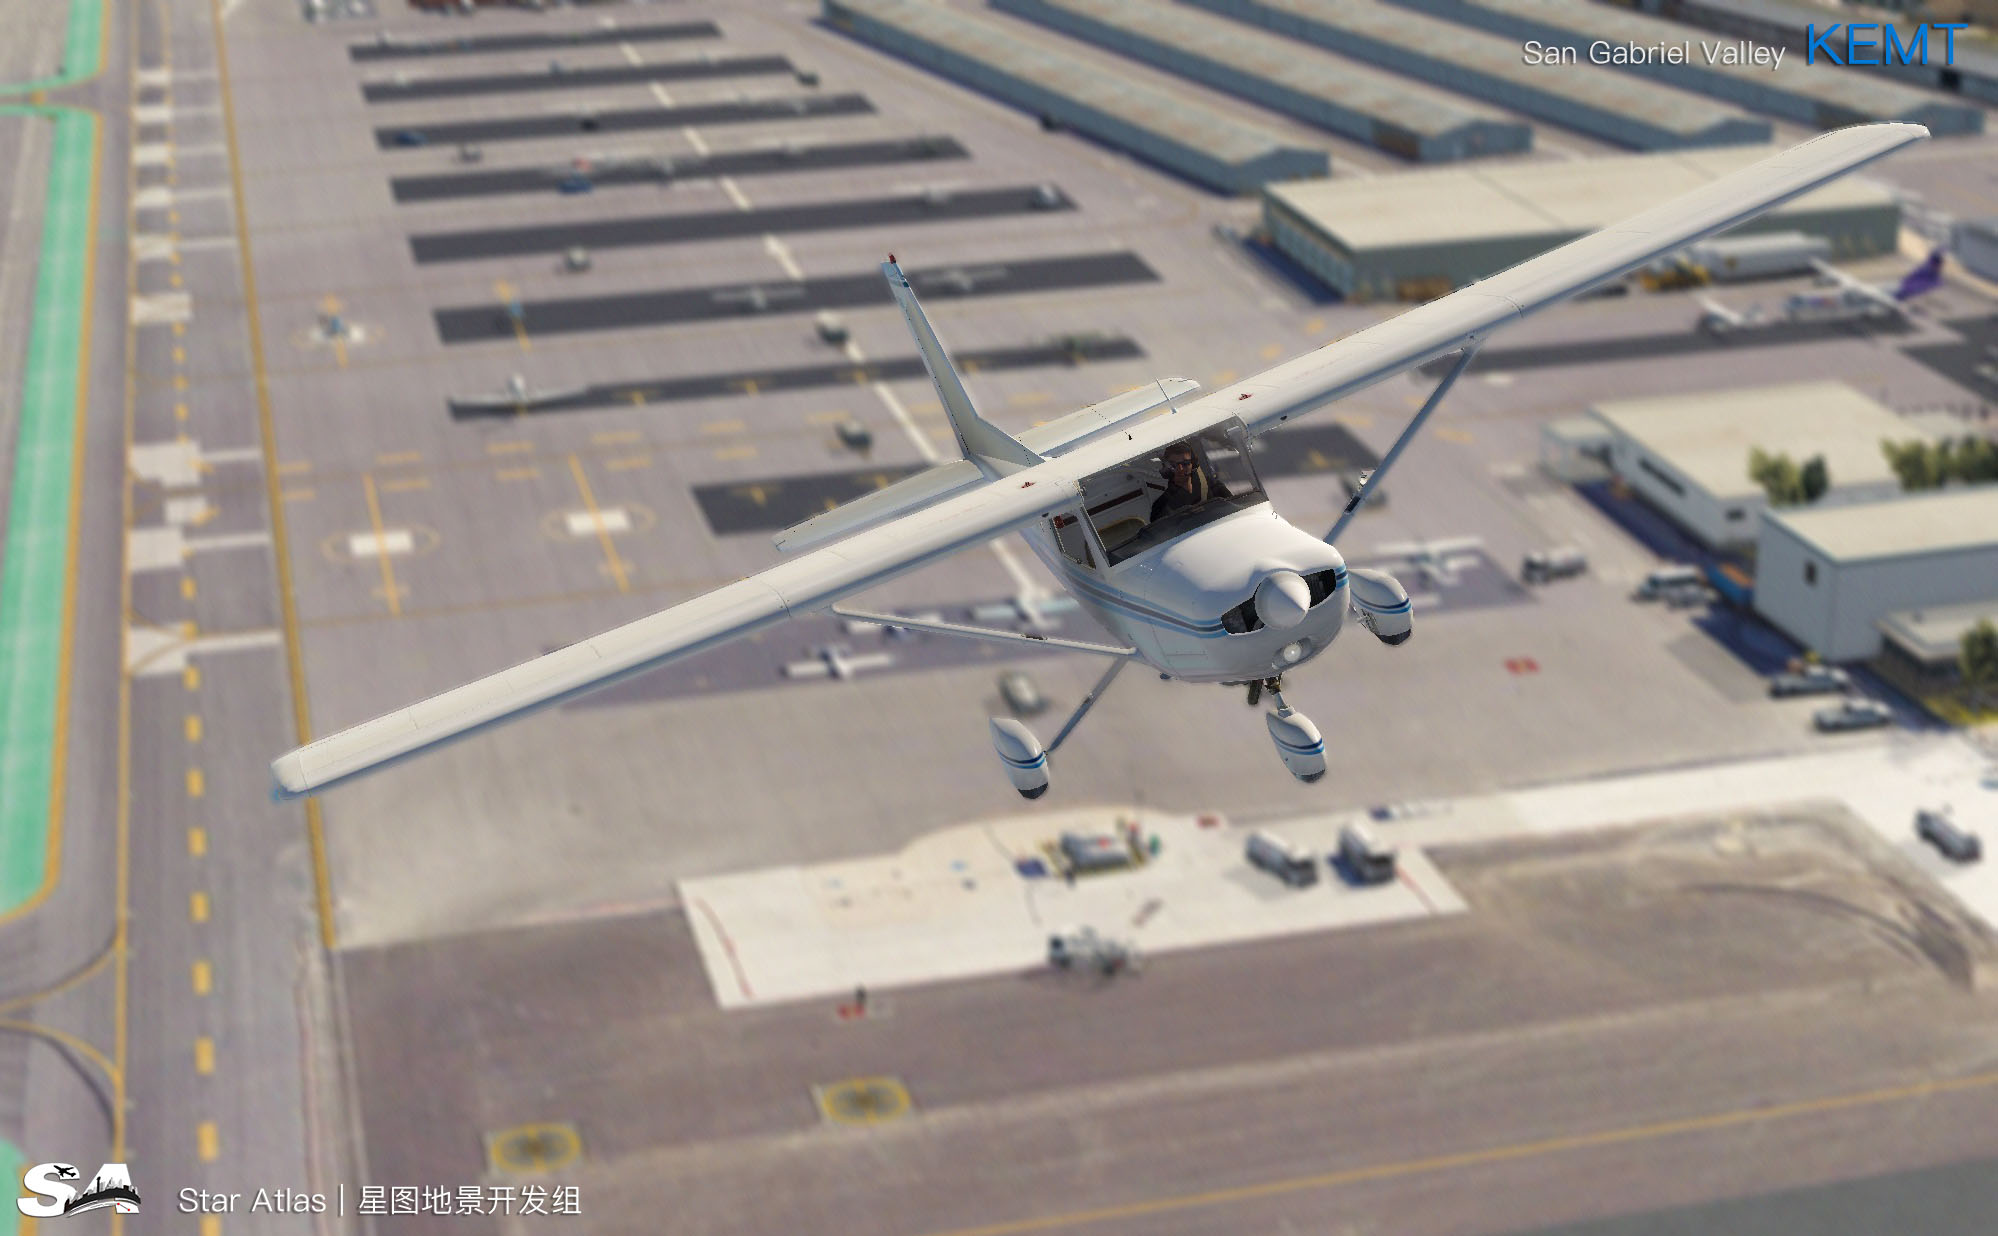 【X-Plane】KEMT-圣盖博谷机场 HD 1.0-4088 